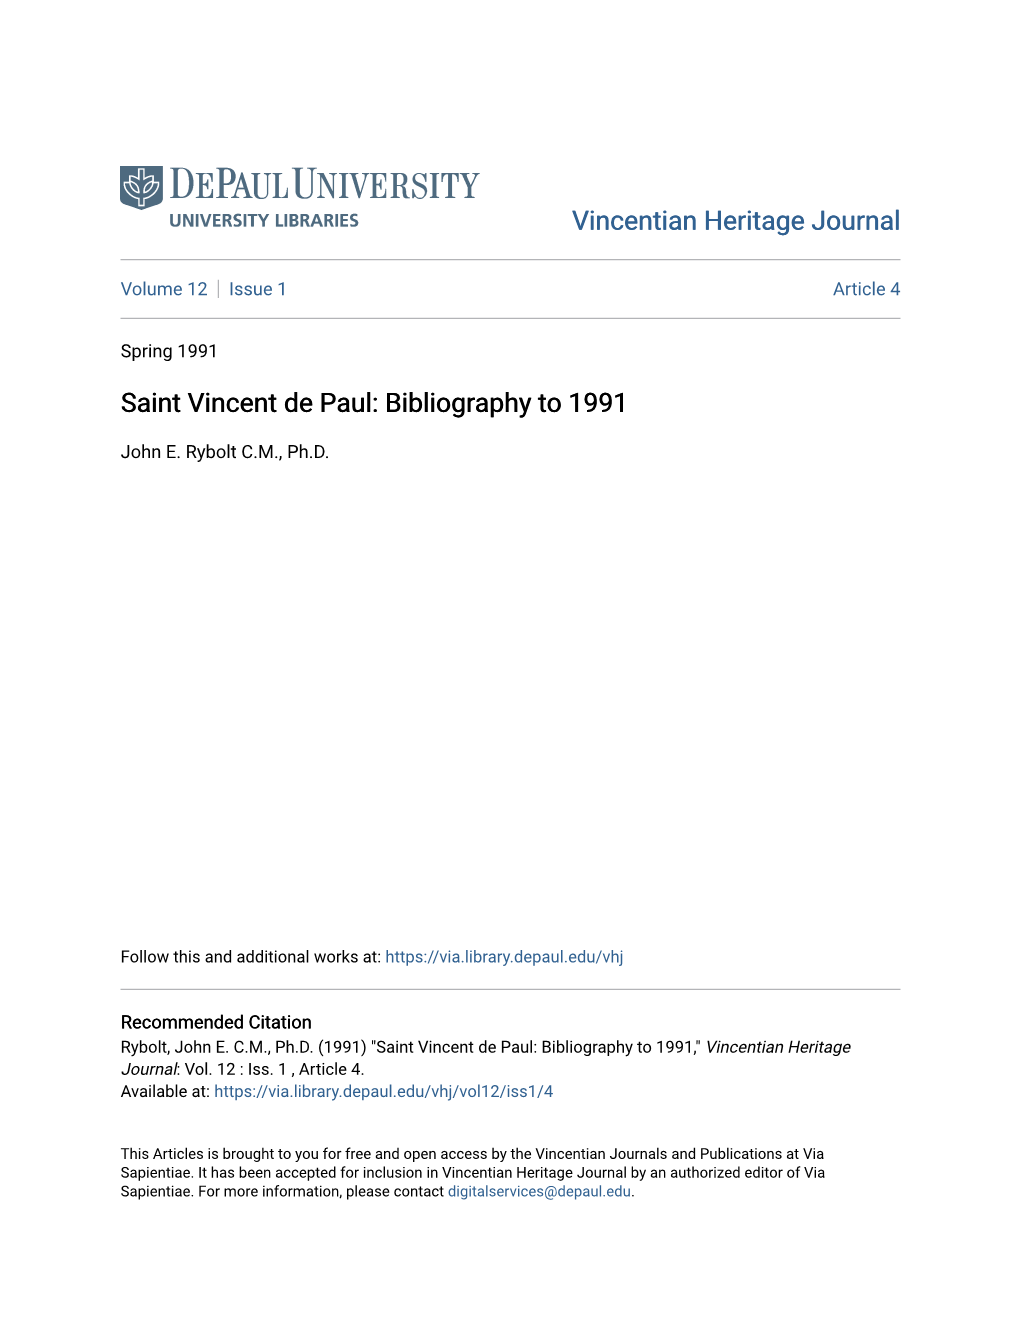 Saint Vincent De Paul: Bibliography to 1991